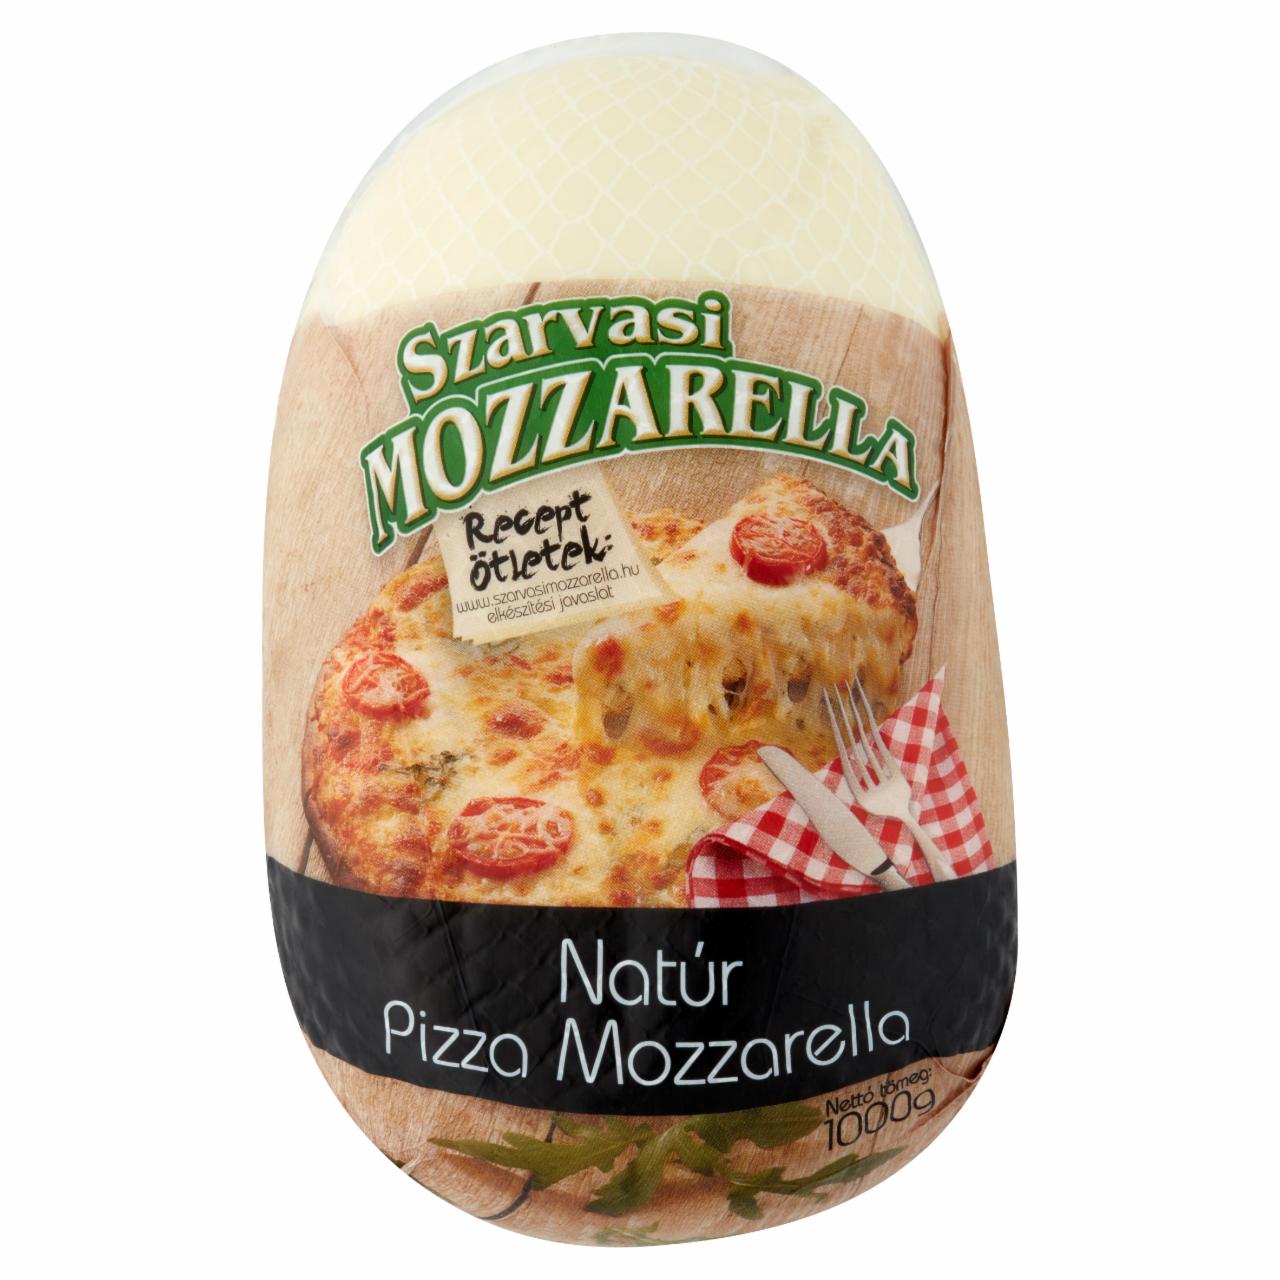 Képek - Szarvasi natúr pizza mozzarella sajt 1000 g